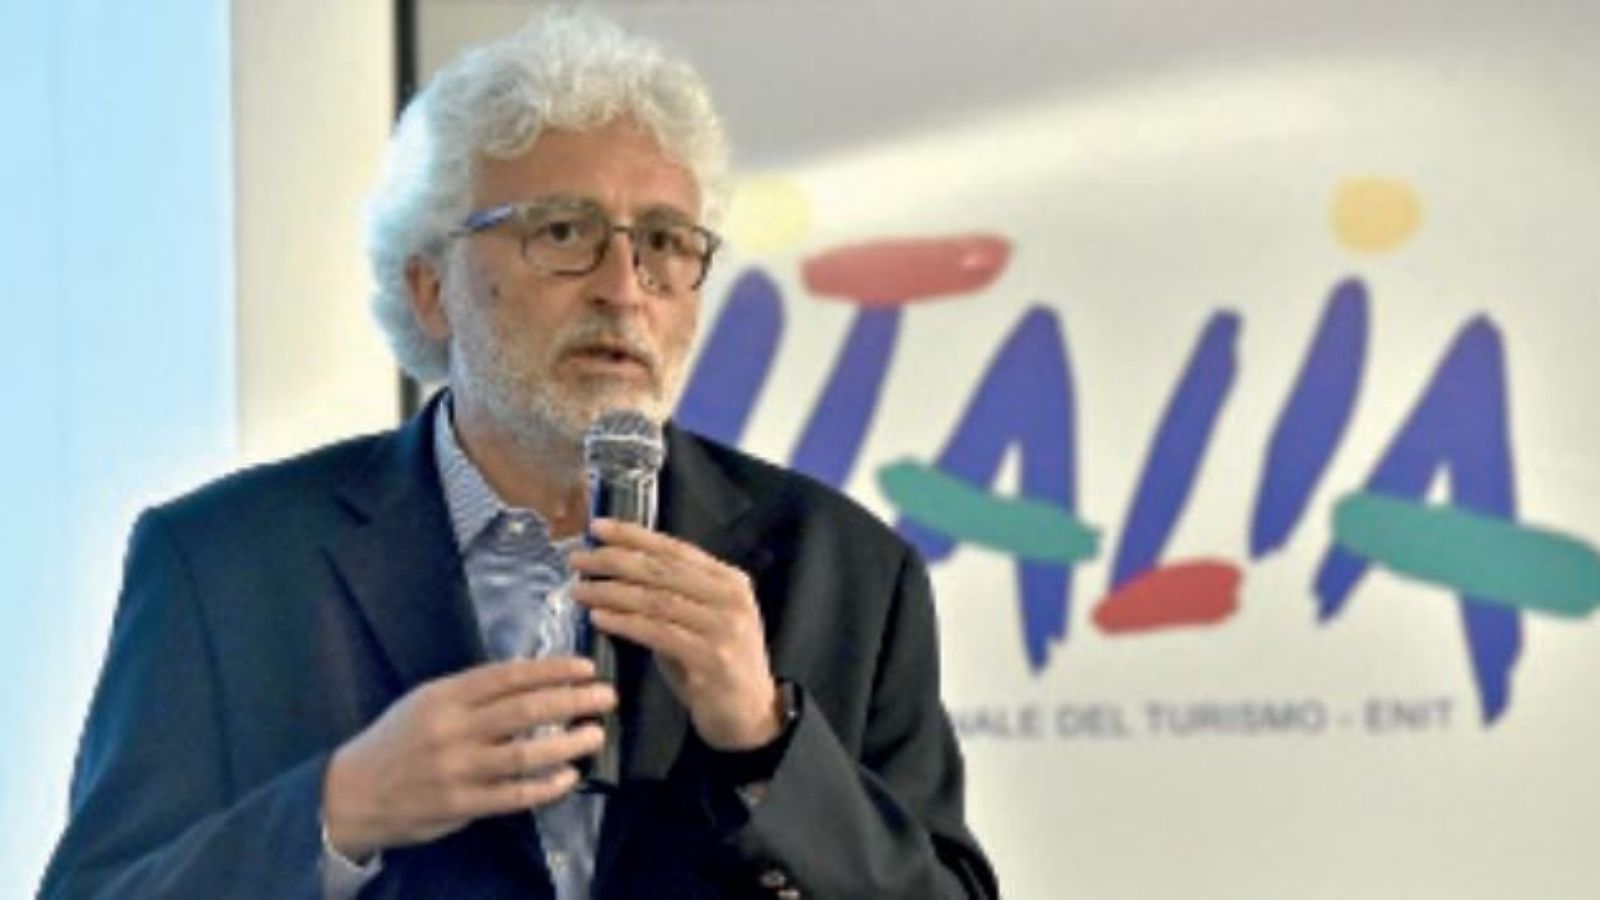 Gianni Bastianelli, direttore generale di Enit, l'Agenzia nazionale per il turismo 